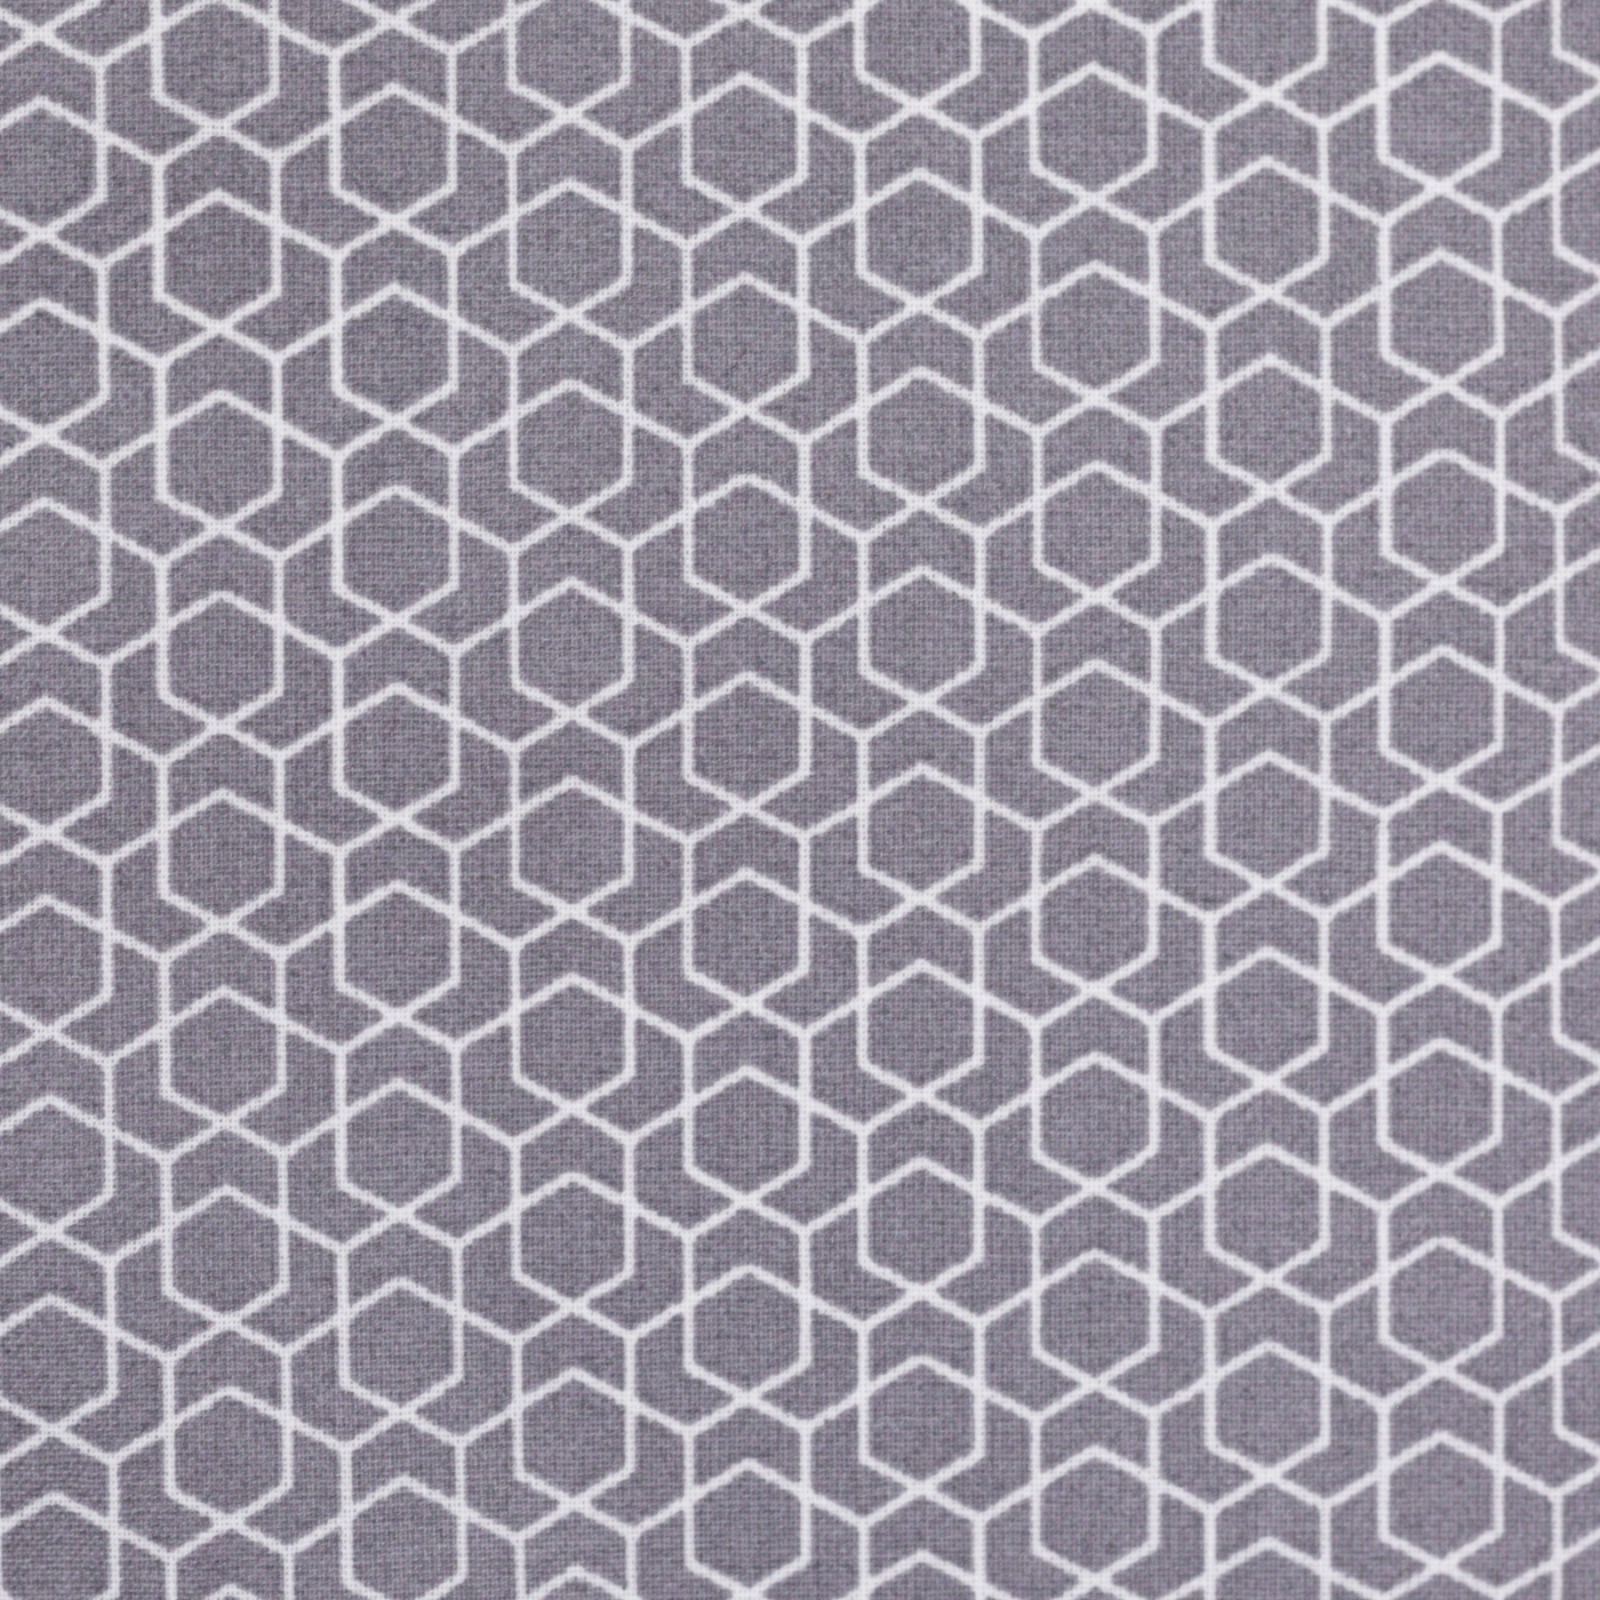 0,5m Beschichtete Baumwolle Leonie geometisches Muster, grau weiß 2